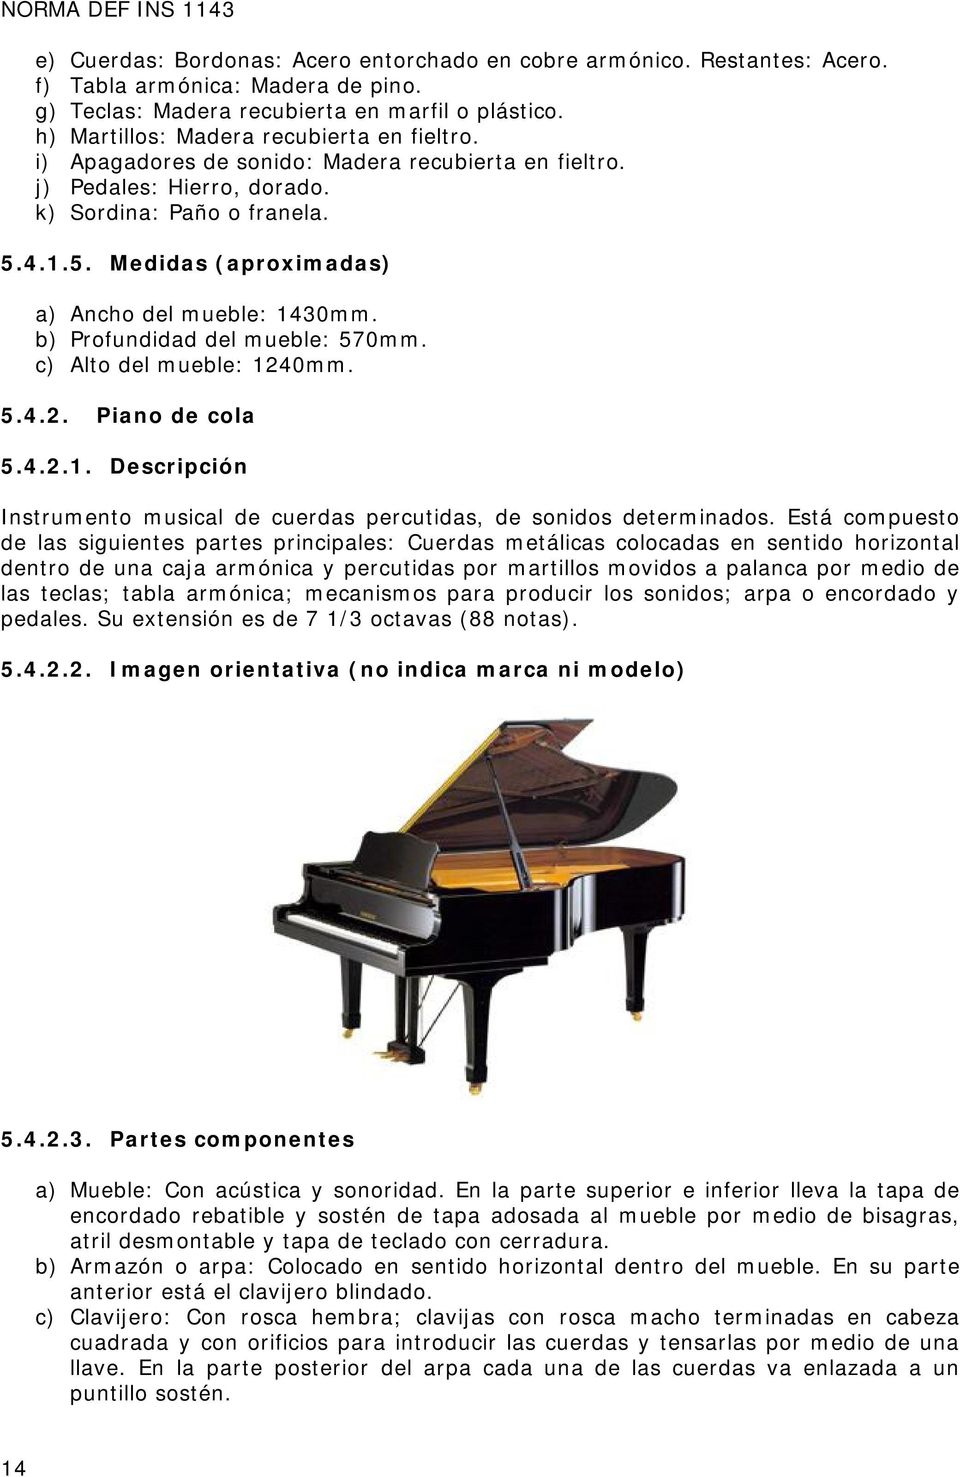 4.1.5. Medidas (aproximadas) a) Ancho del mueble: 1430mm. b) Profundidad del mueble: 570mm. c) Alto del mueble: 1240mm. 5.4.2. Piano de cola 5.4.2.1. Descripción Instrumento musical de cuerdas percutidas, de sonidos determinados.